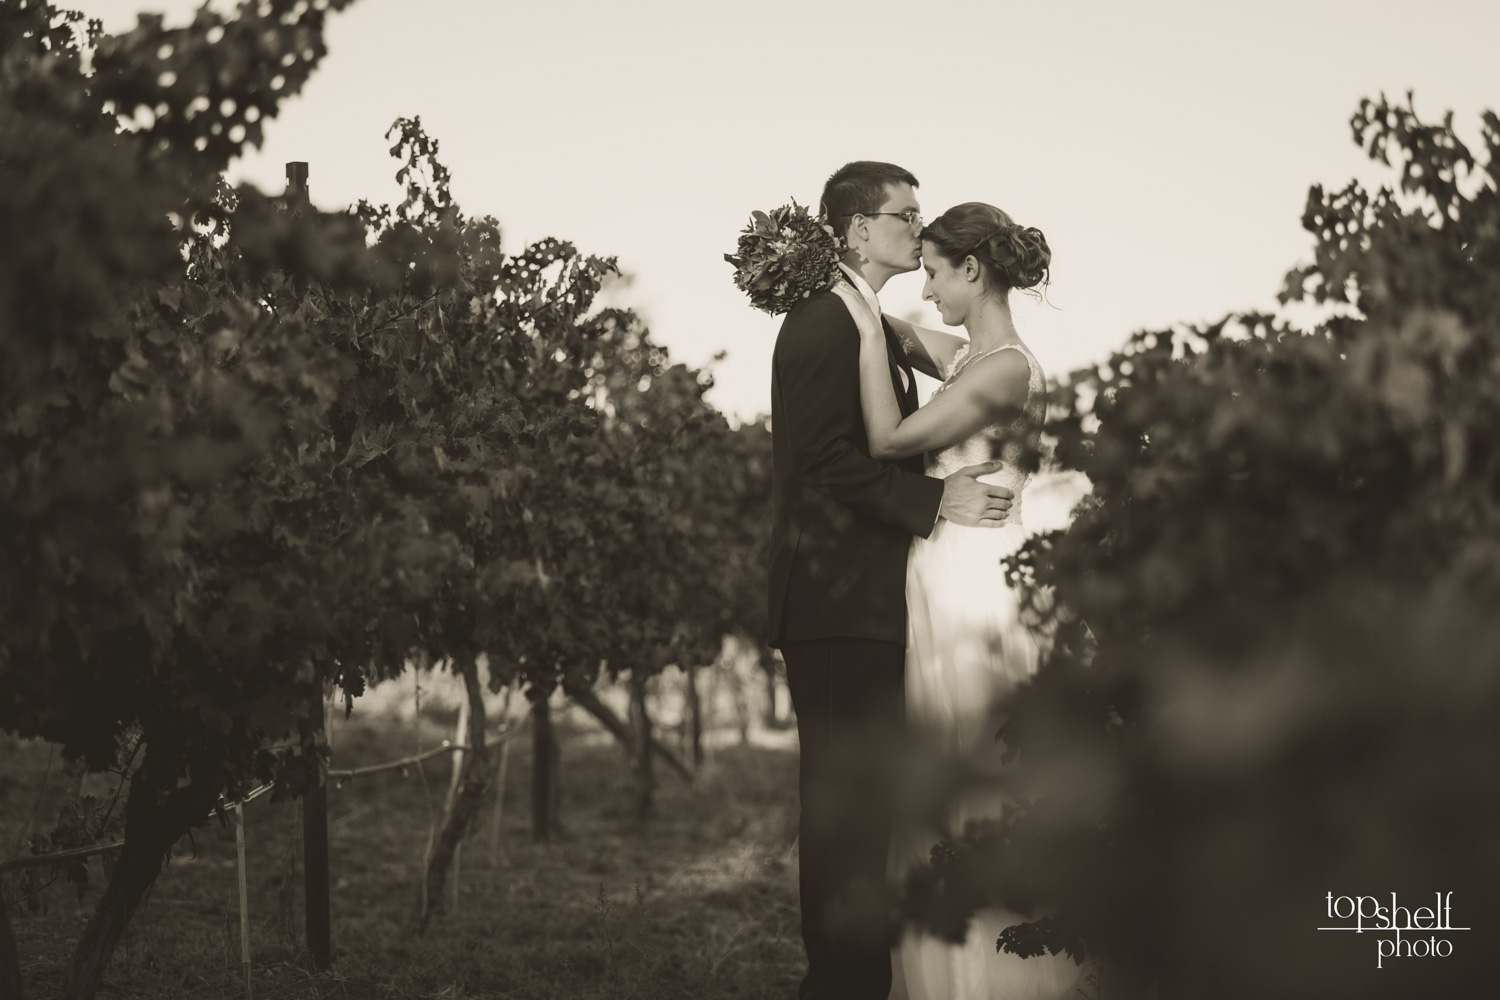 cordiano-winery-wedding-san-diego-top-shelf-photo-2.jpg